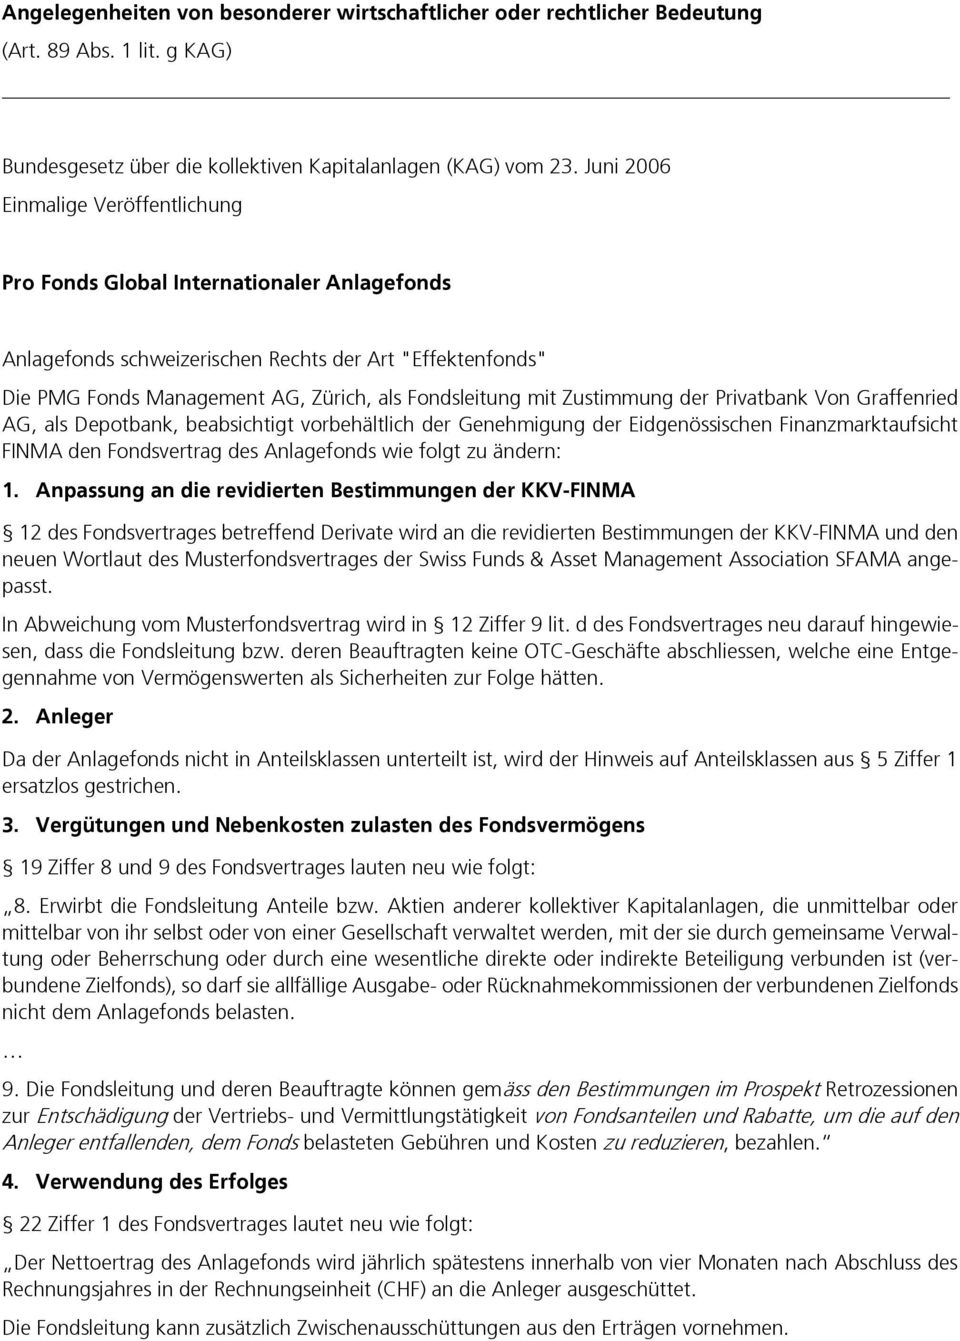 Zustimmung der Privatbank Von Graffenried AG, als Depotbank, beabsichtigt vorbehältlich der Genehmigung der Eidgenössischen Finanzmarktaufsicht FINMA den Fondsvertrag des Anlagefonds wie folgt zu